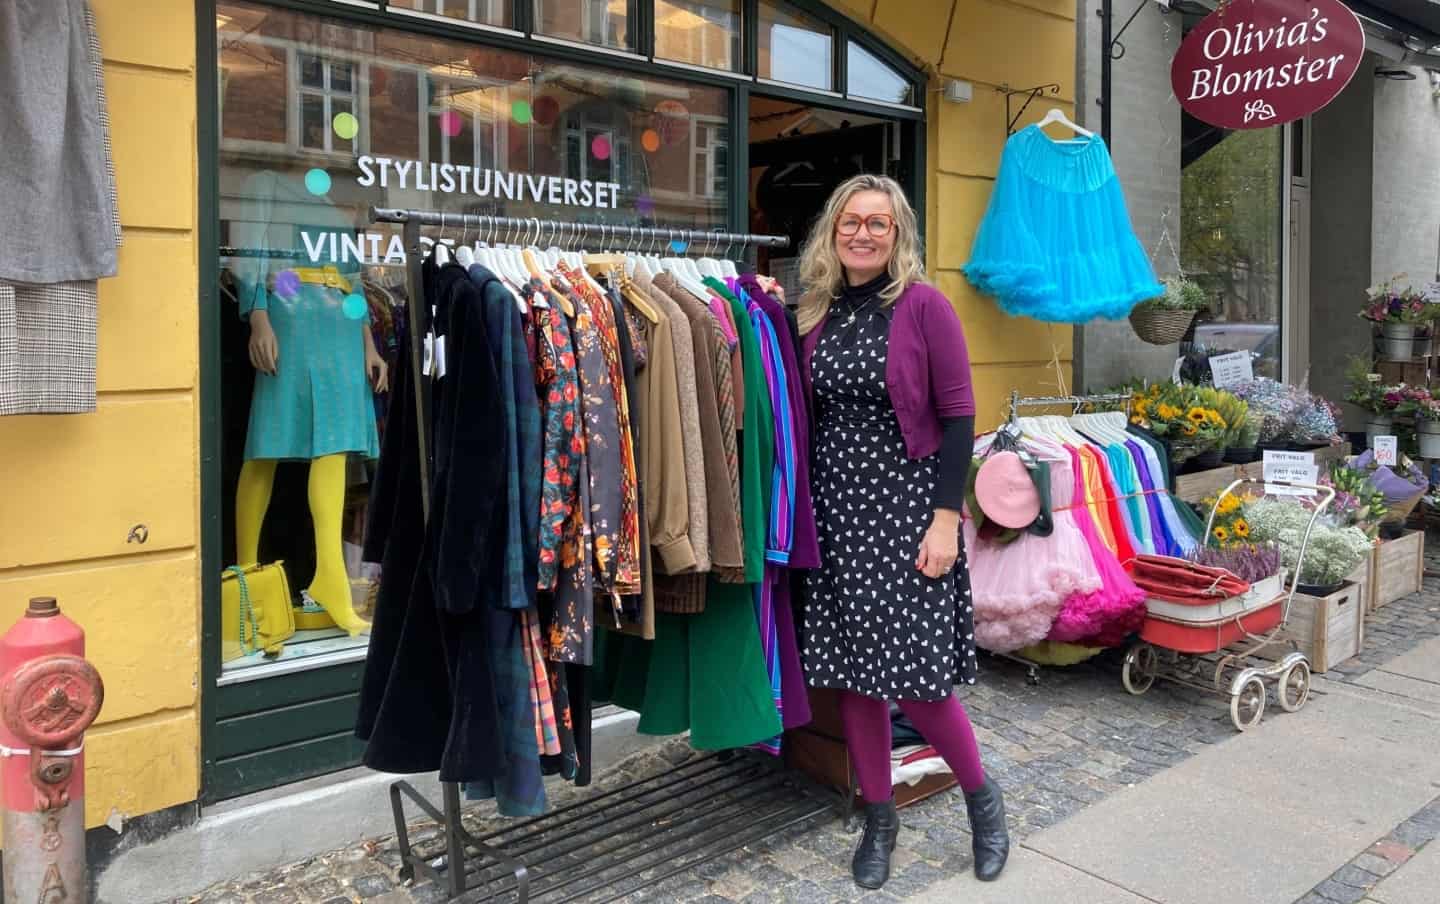 Pia må tage afsked med sin helt unikke butik: - Jeg orker ikke have ondt i maven hver måned længere | valbyliv.dk